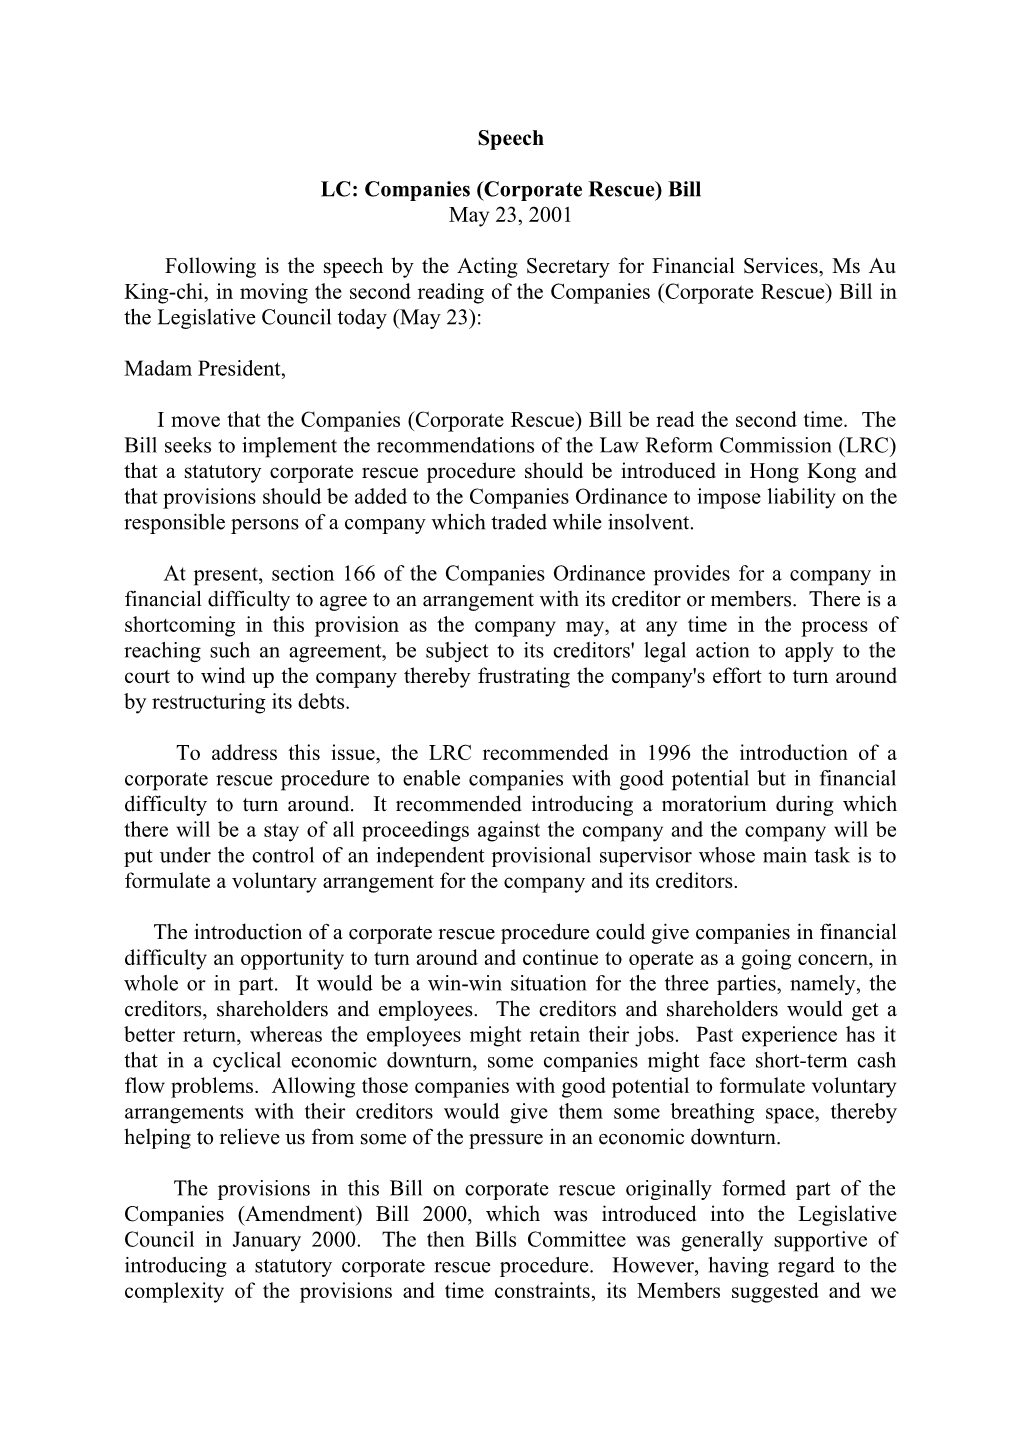 LC: Companies (Corporate Rescue) Bill (23.5.2001)